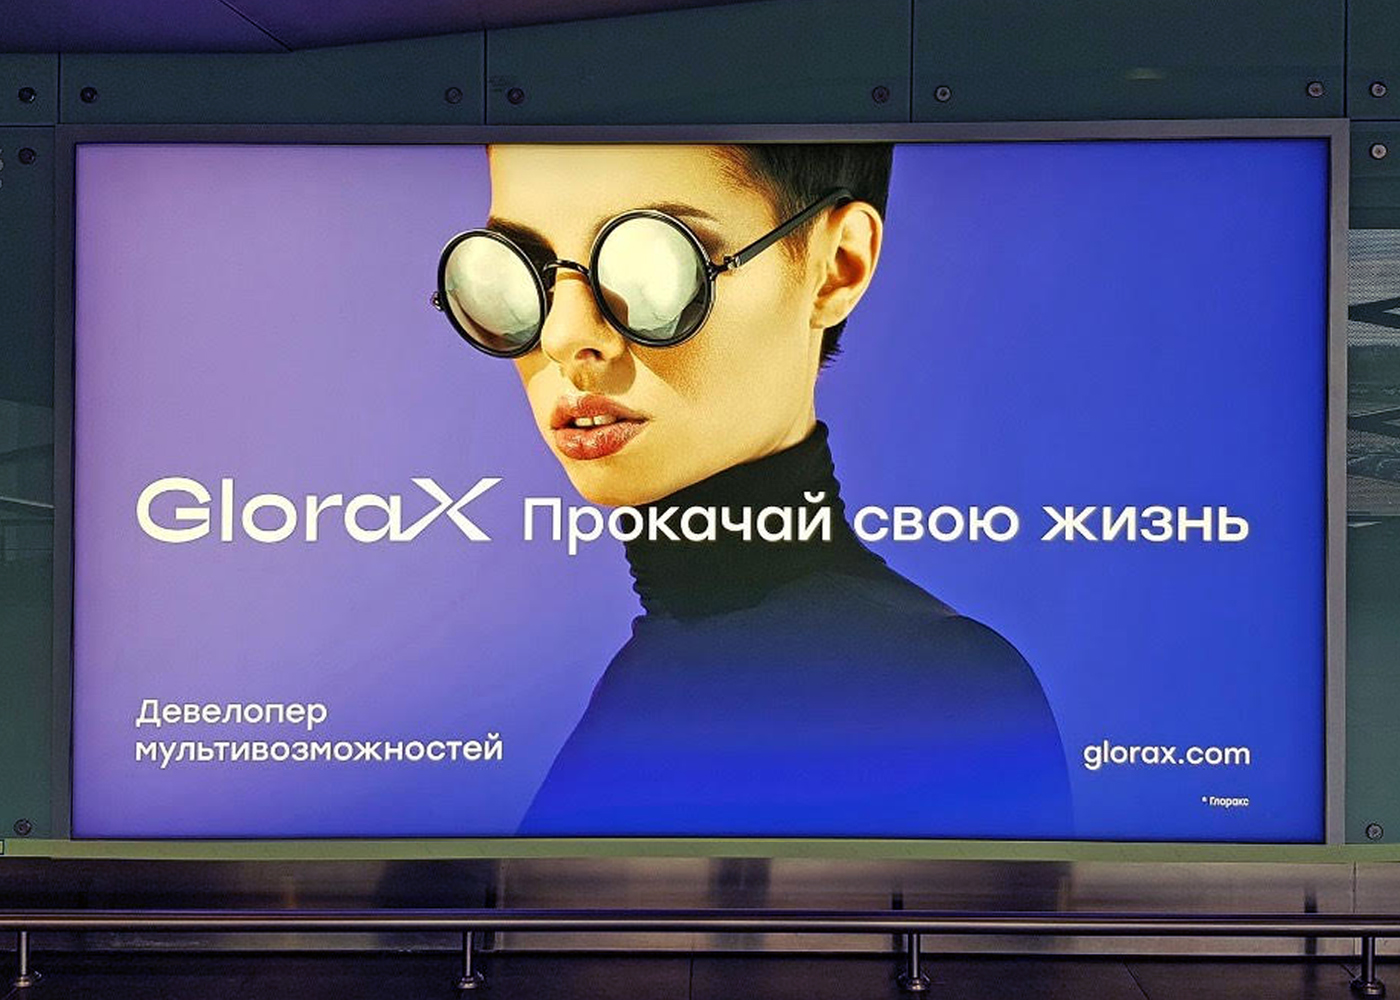 g_oblozhka_naruzhnaya_reklama.jpg